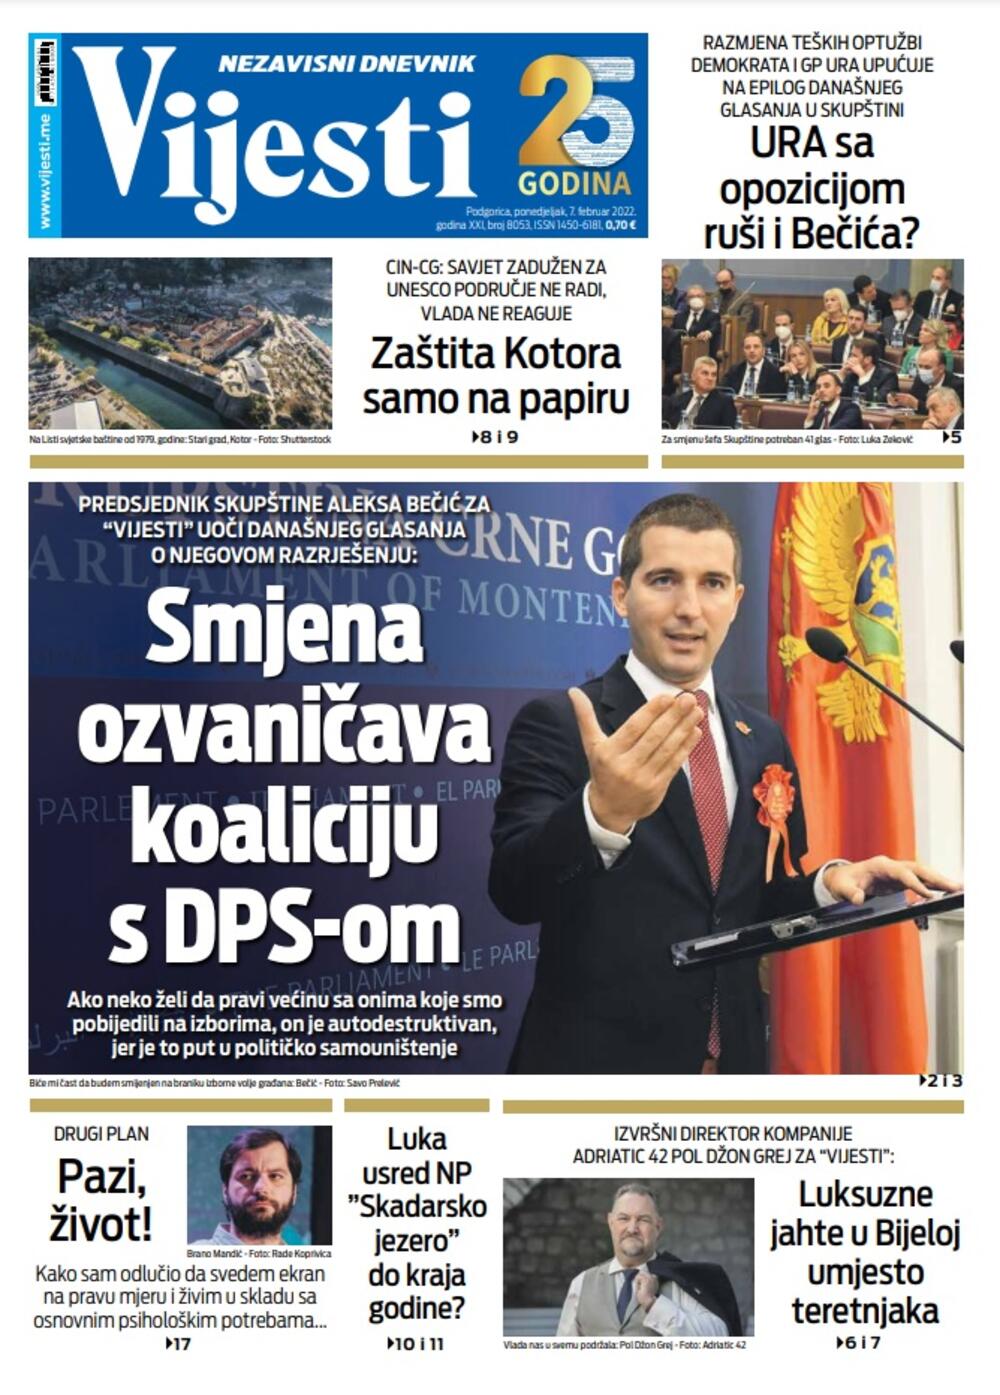 Naslovna strana "Vijesti" za 7. februar 2022. godine, Foto: Vijesti